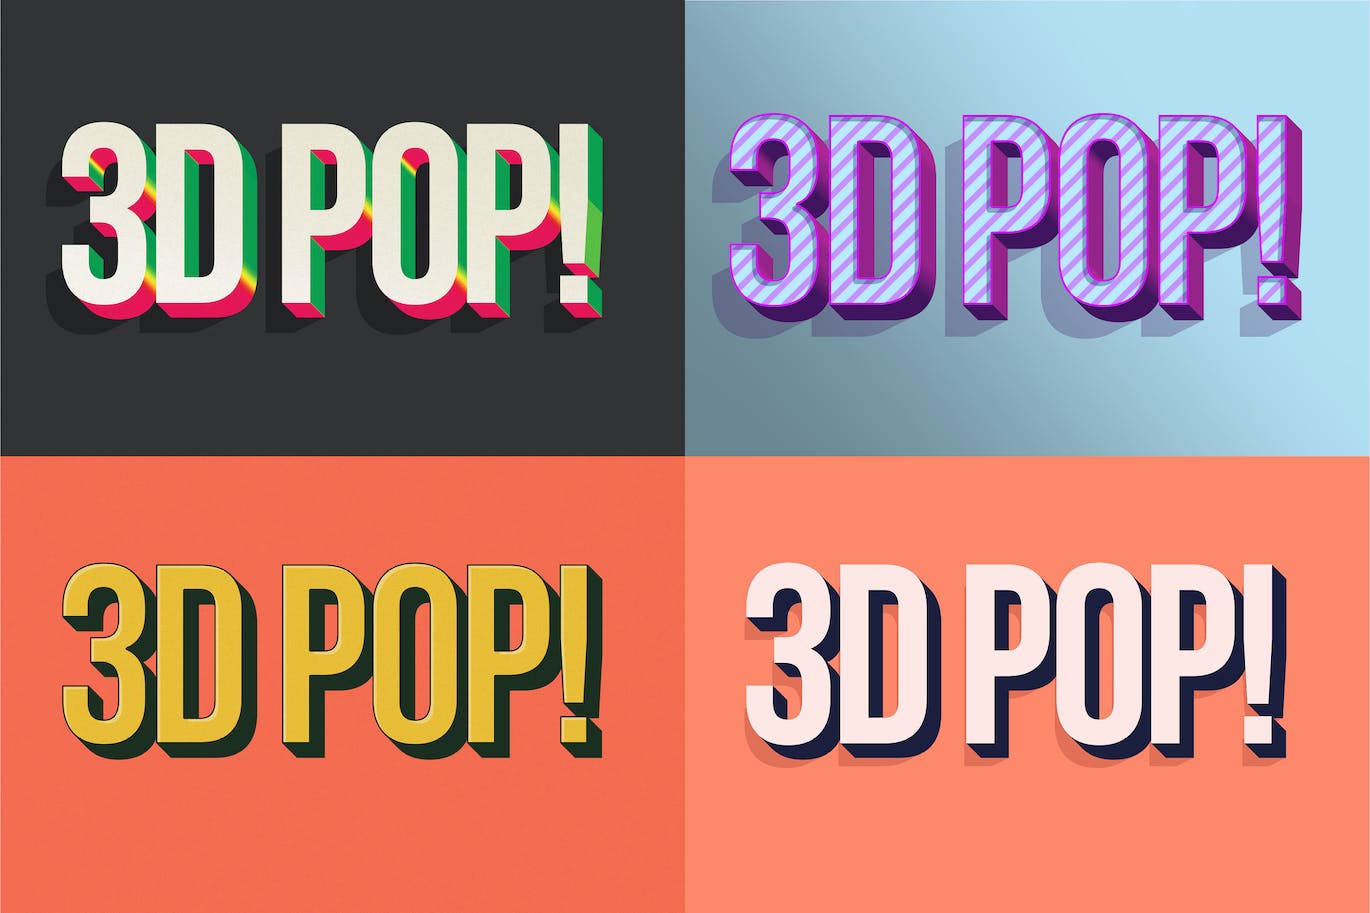 3D立体风格ps文字效果样式v2 3D POP! Photoshop Effects Vol. 2 设计素材 第5张